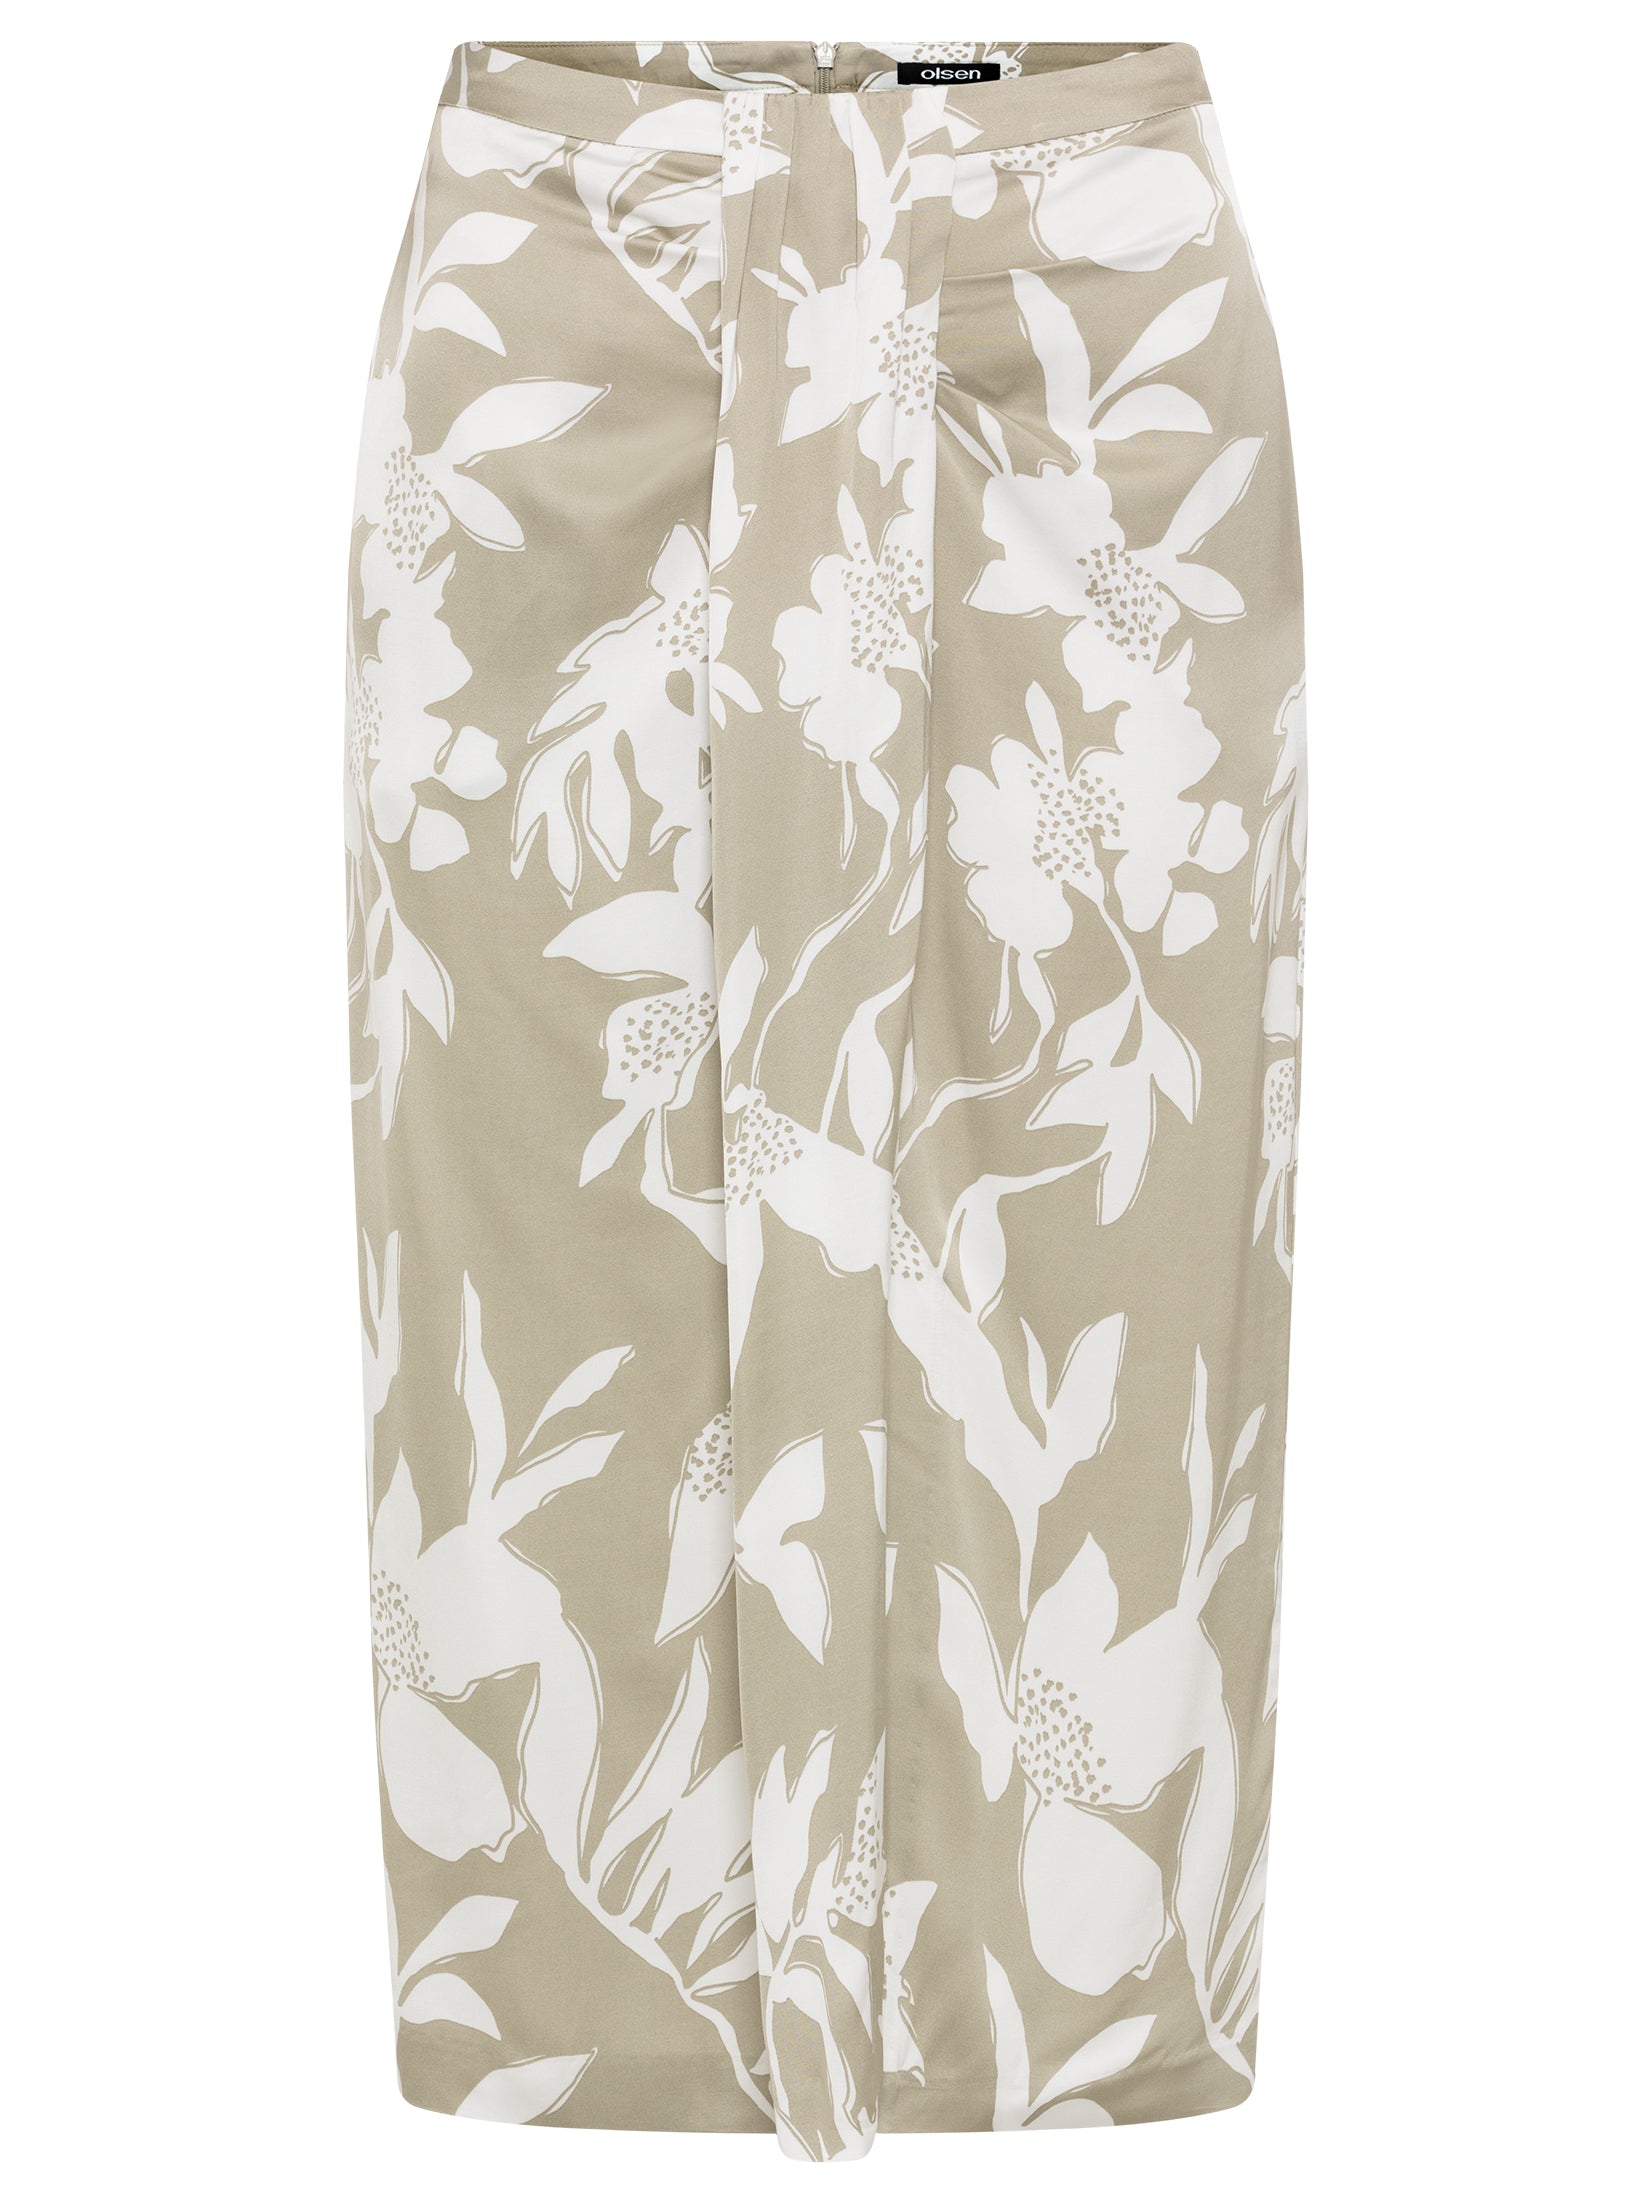 Floral Print Skirt in Light Khaki